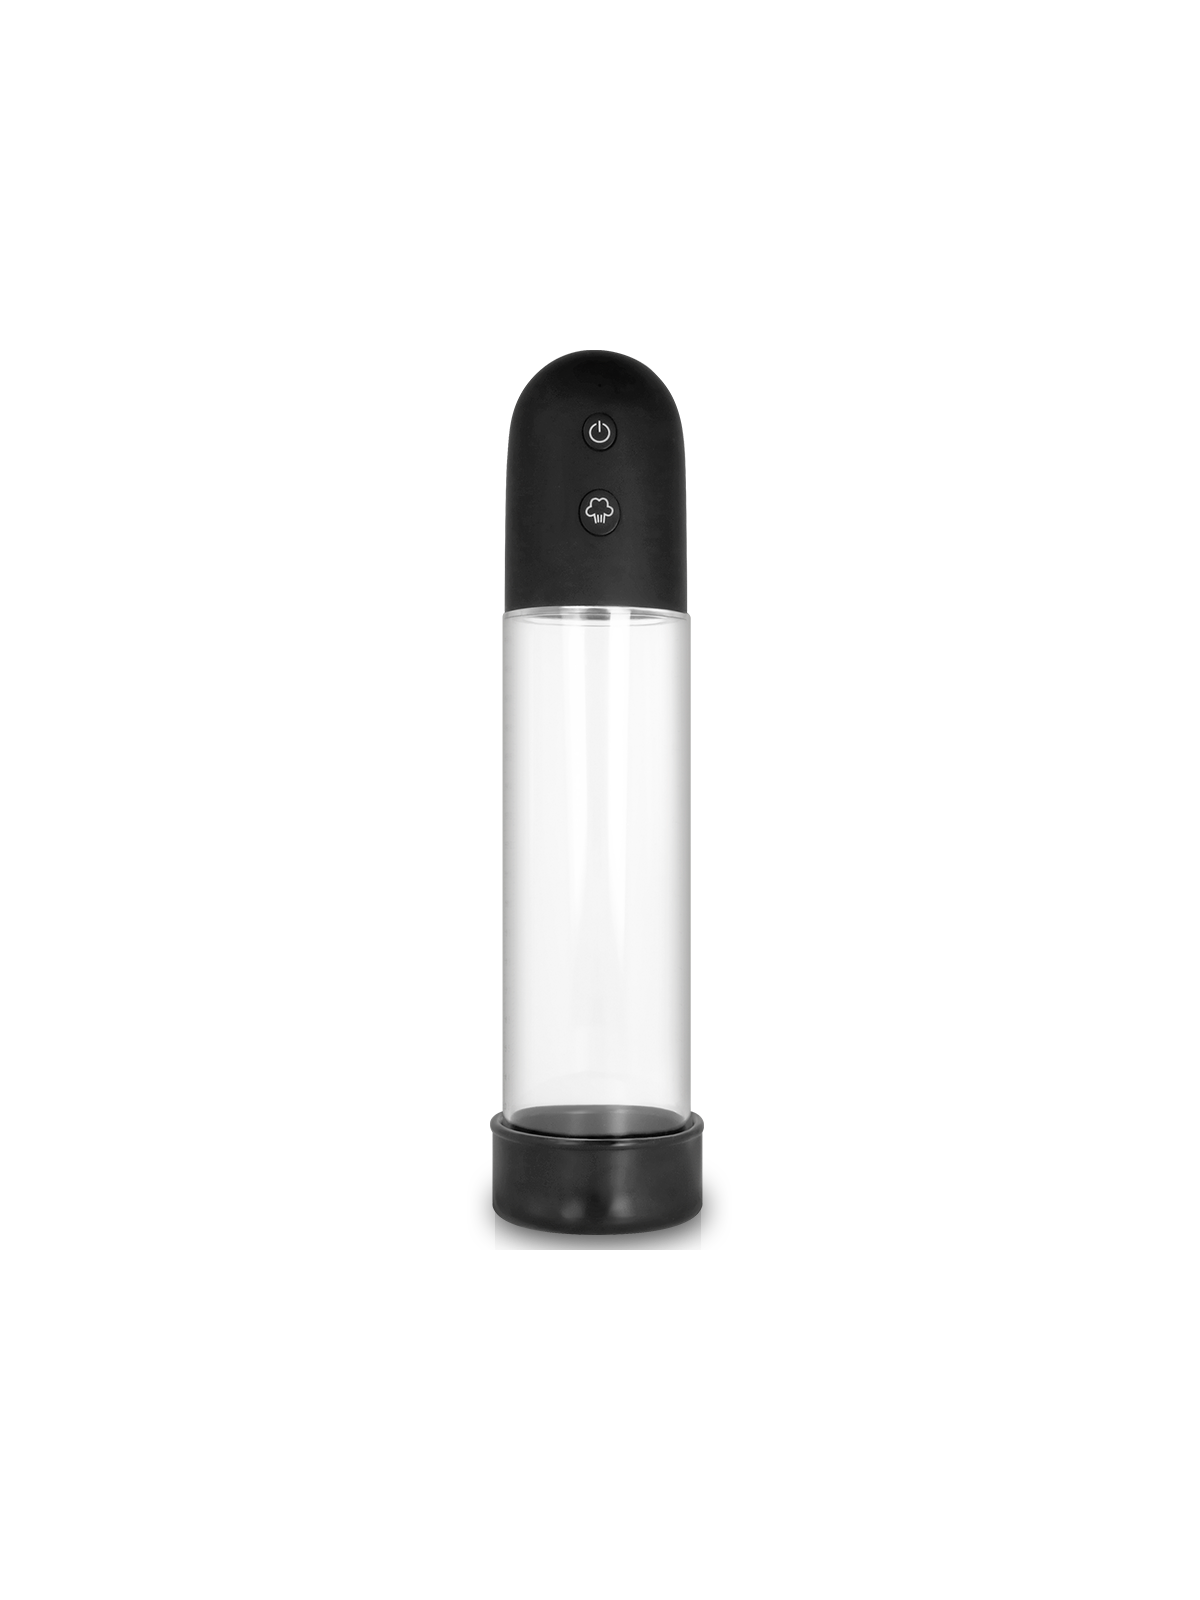 Pump Addicted Bomba Erección Rx11 Automática - Comprar Bomba vacío pene Pump Addicted - Bombas de vacío pene (1)